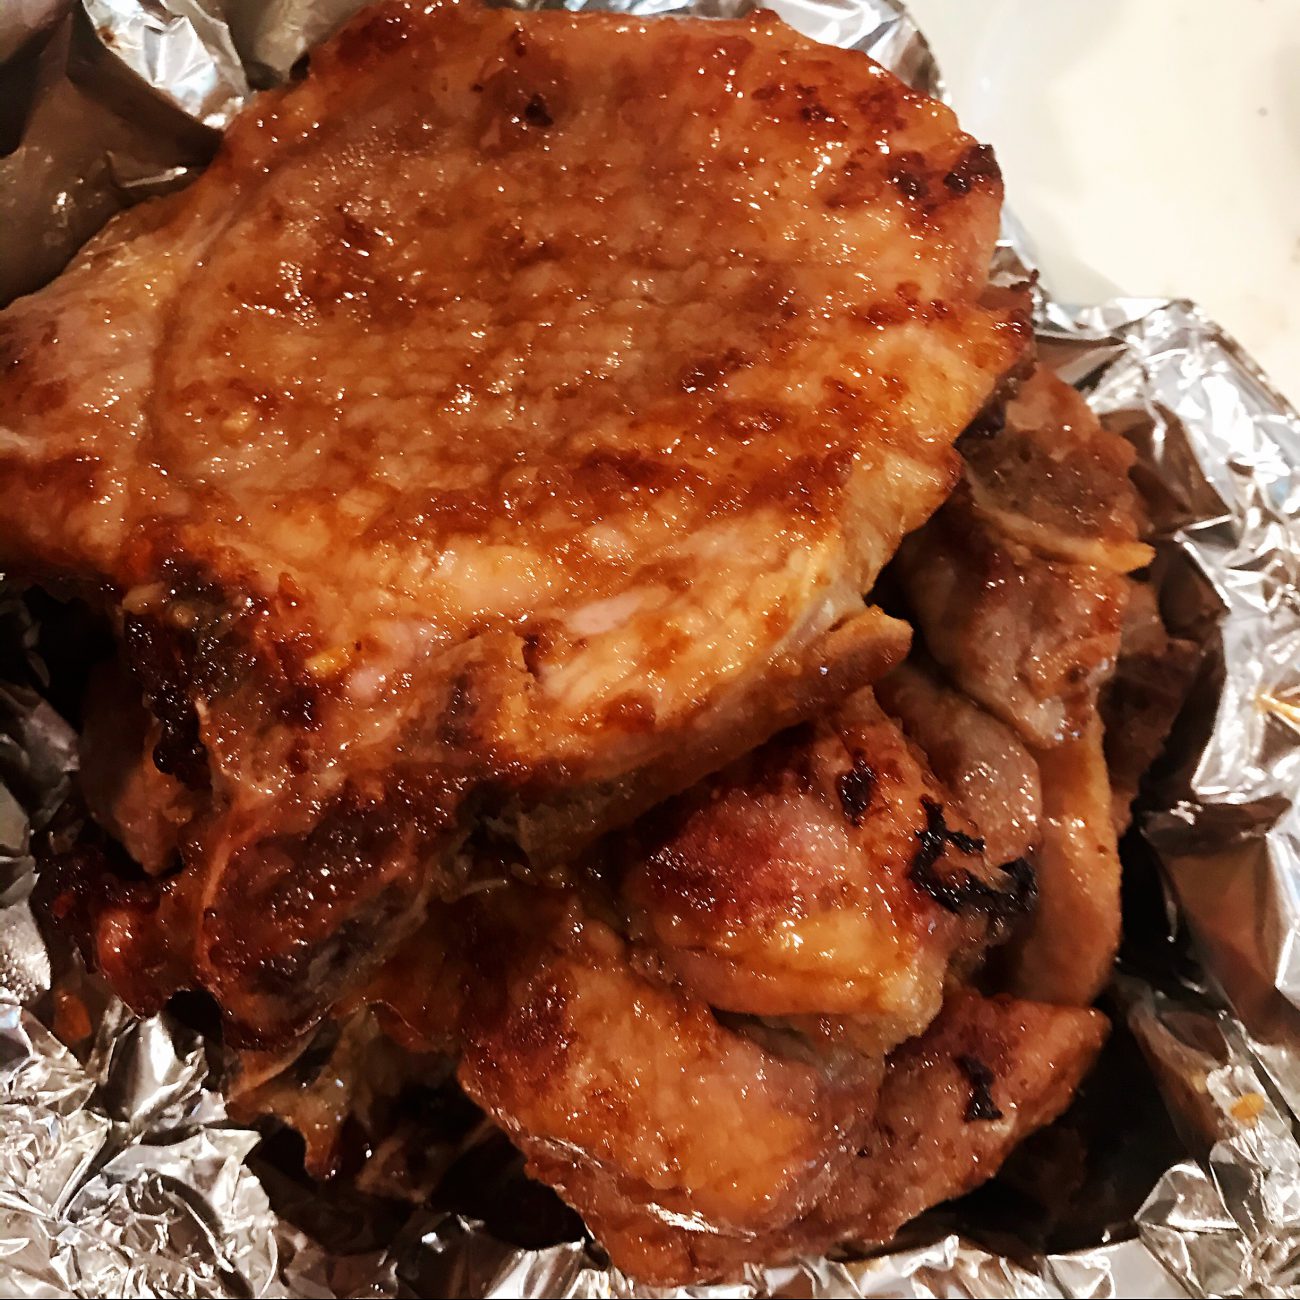 Grilled pork chop with garlic flavor